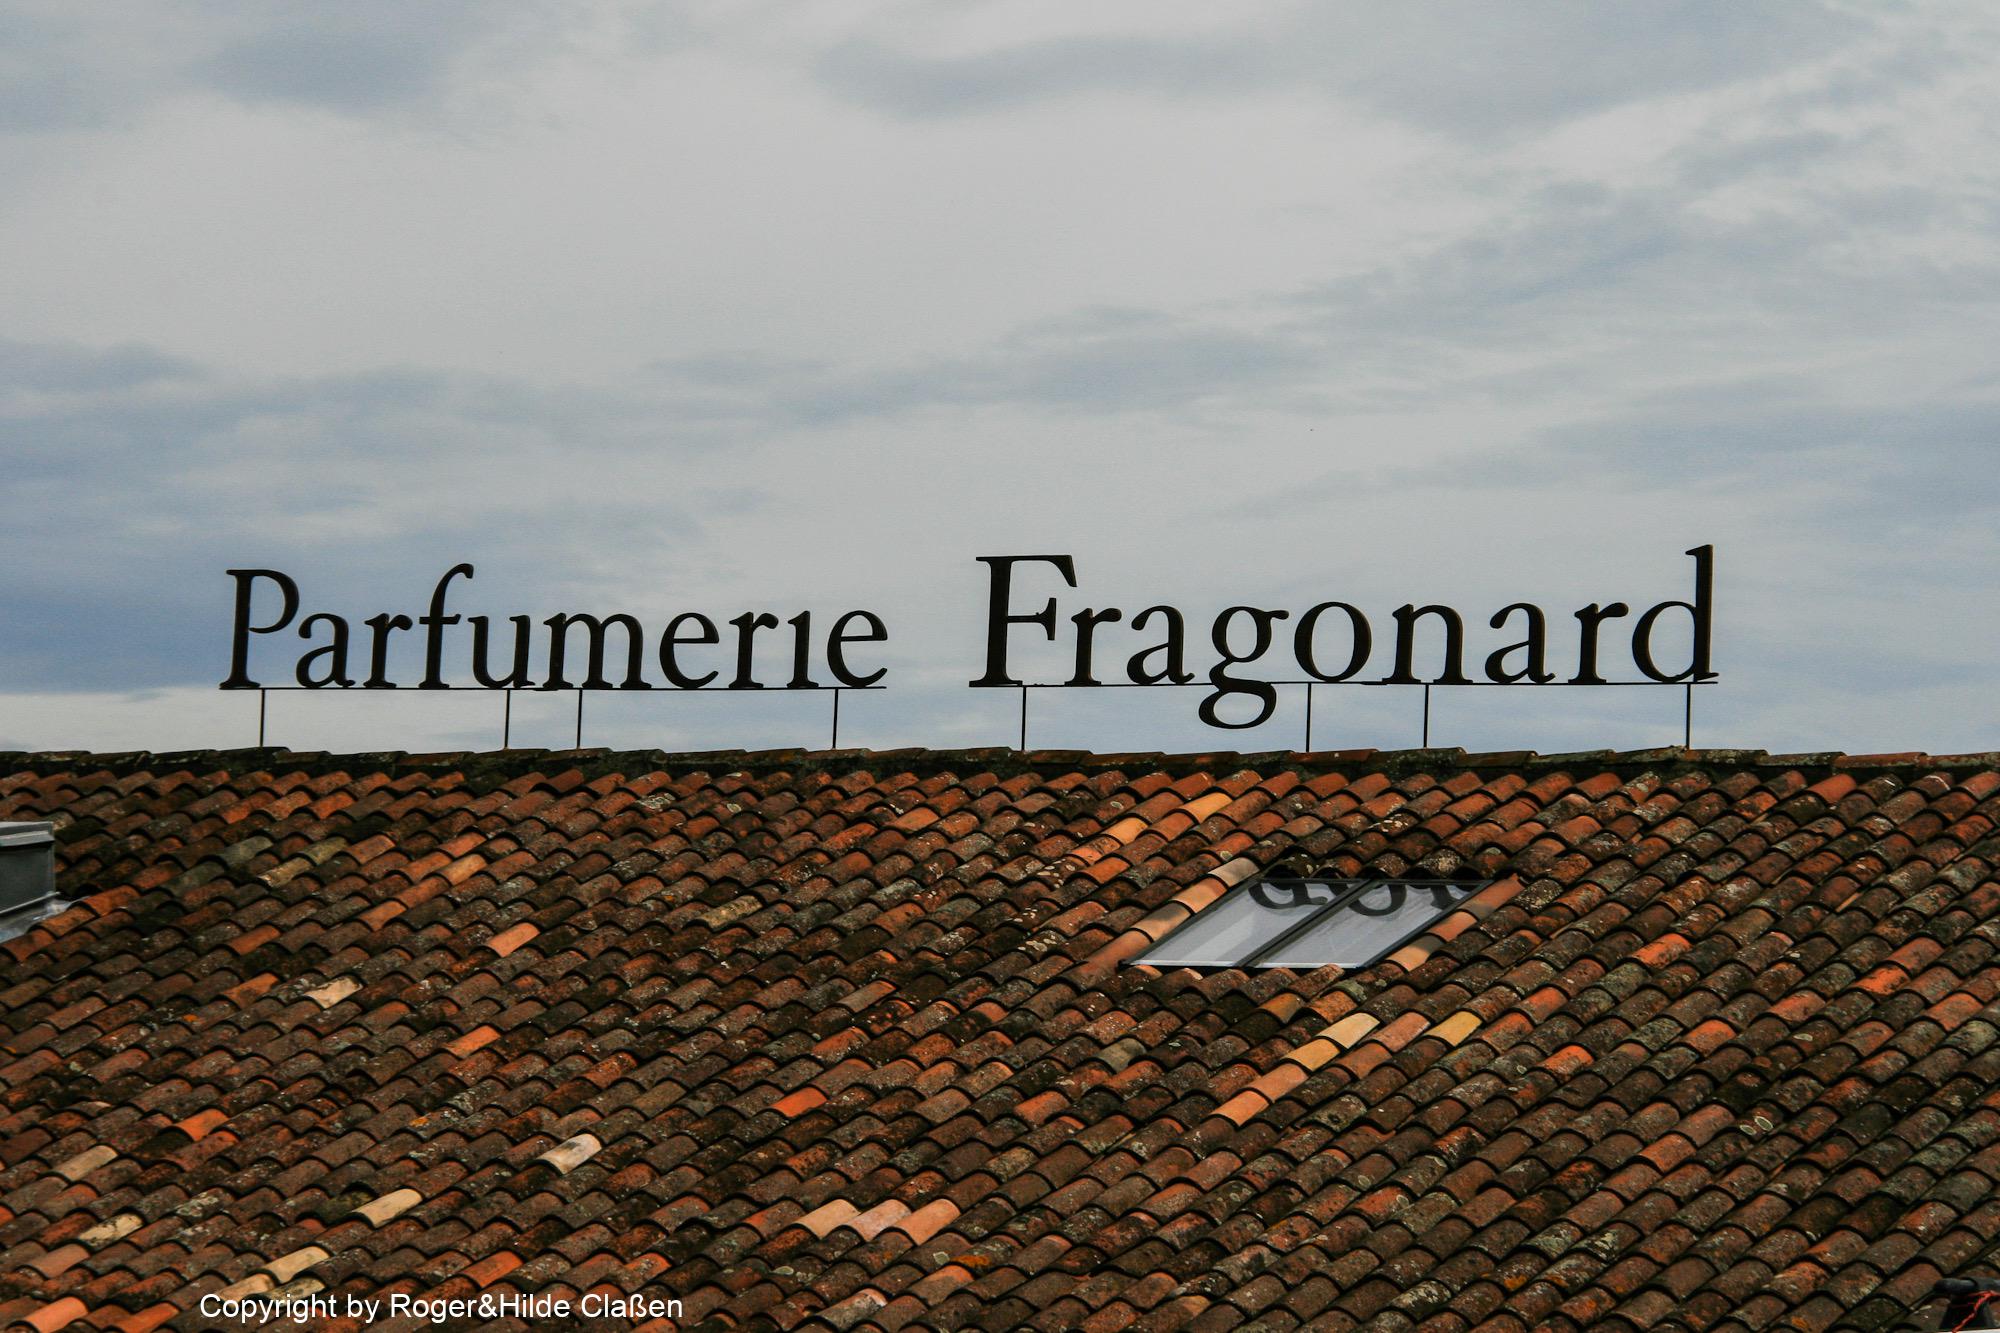 Parfumerie Fragonard ist eine der ältestesten Parfümerien in Grasse.